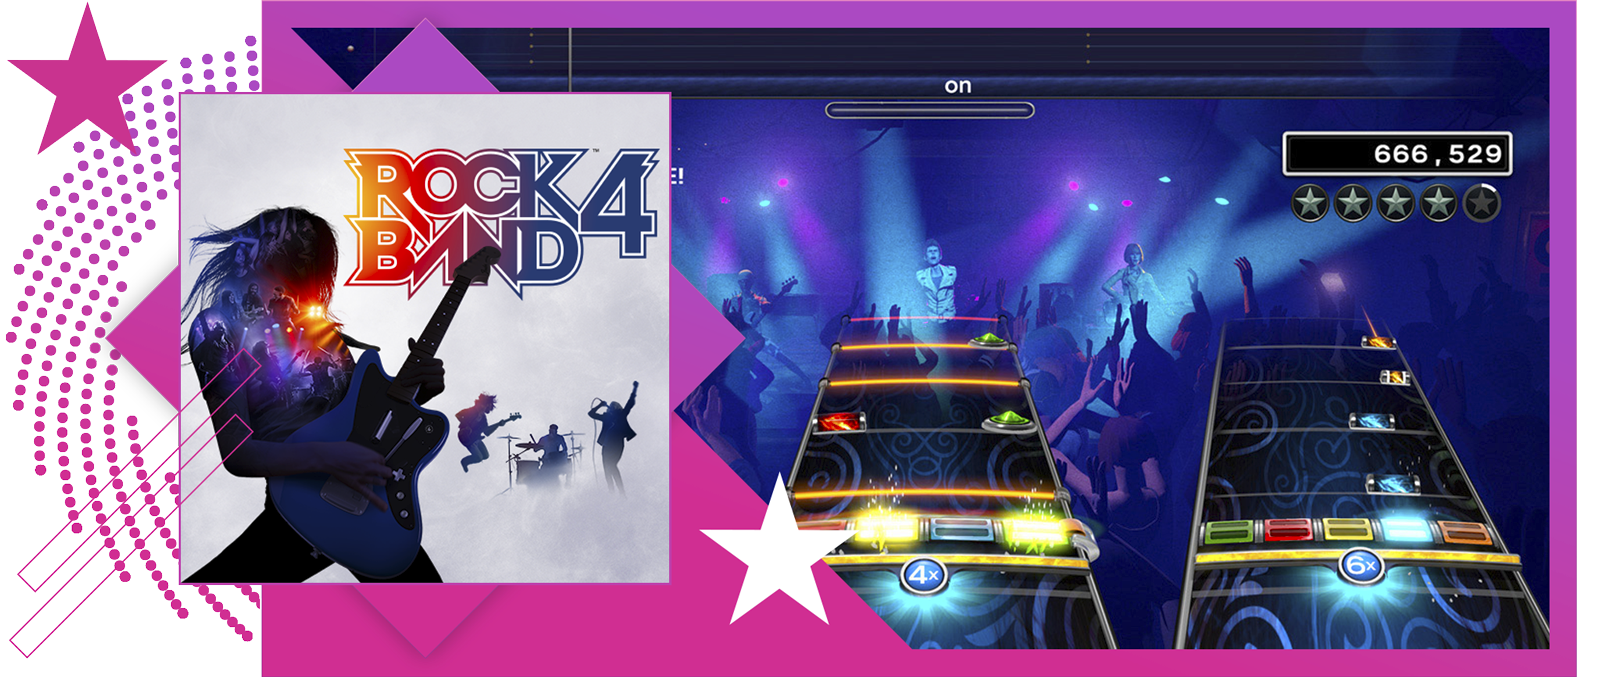 Slika funkcije za najbolje ritmičke igre, sa konceptualnim umetničkim prikazom i tokom igre iz Rock Band 4.